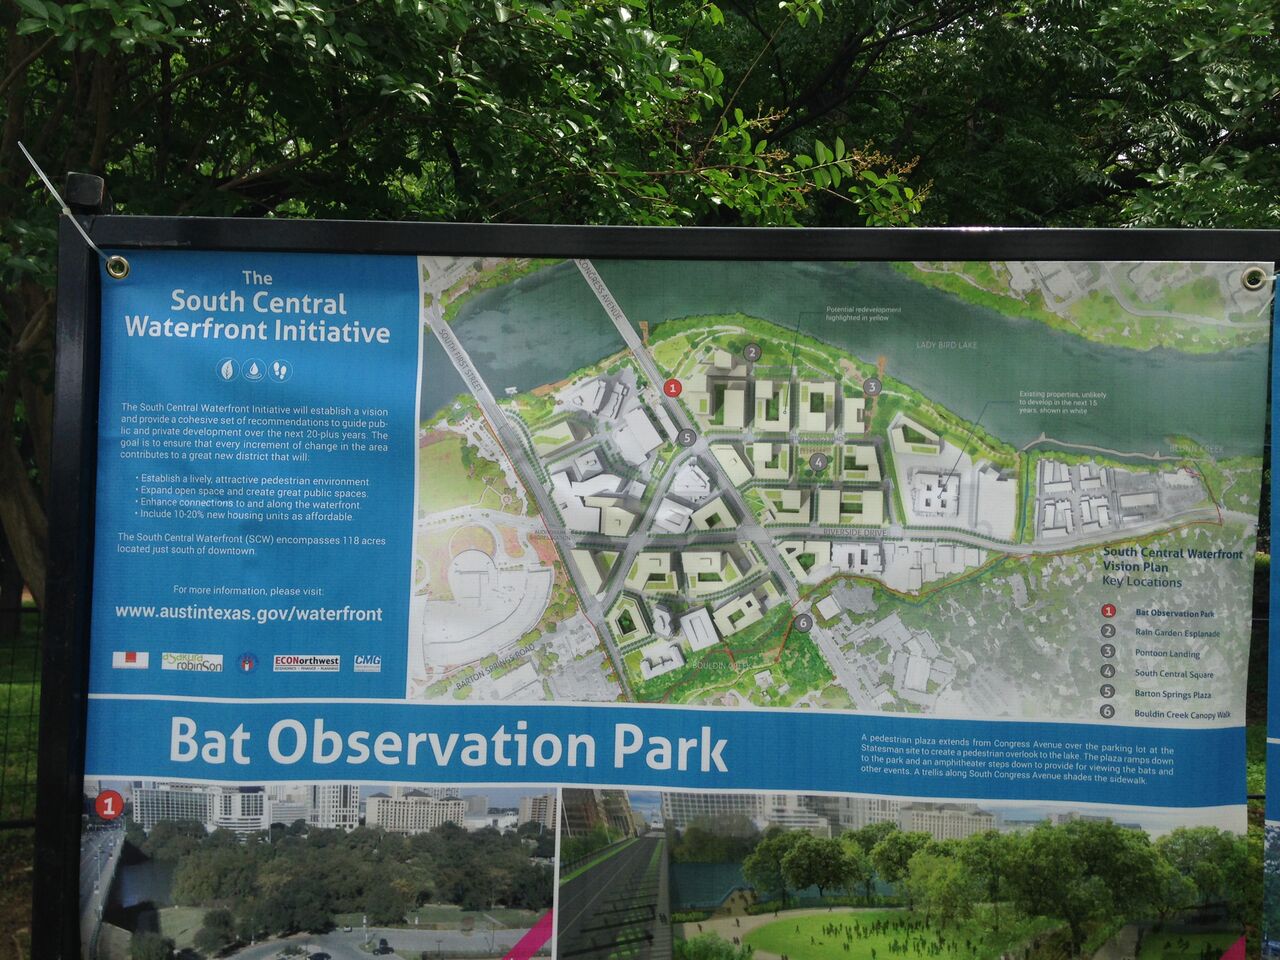 Bat Observation Park